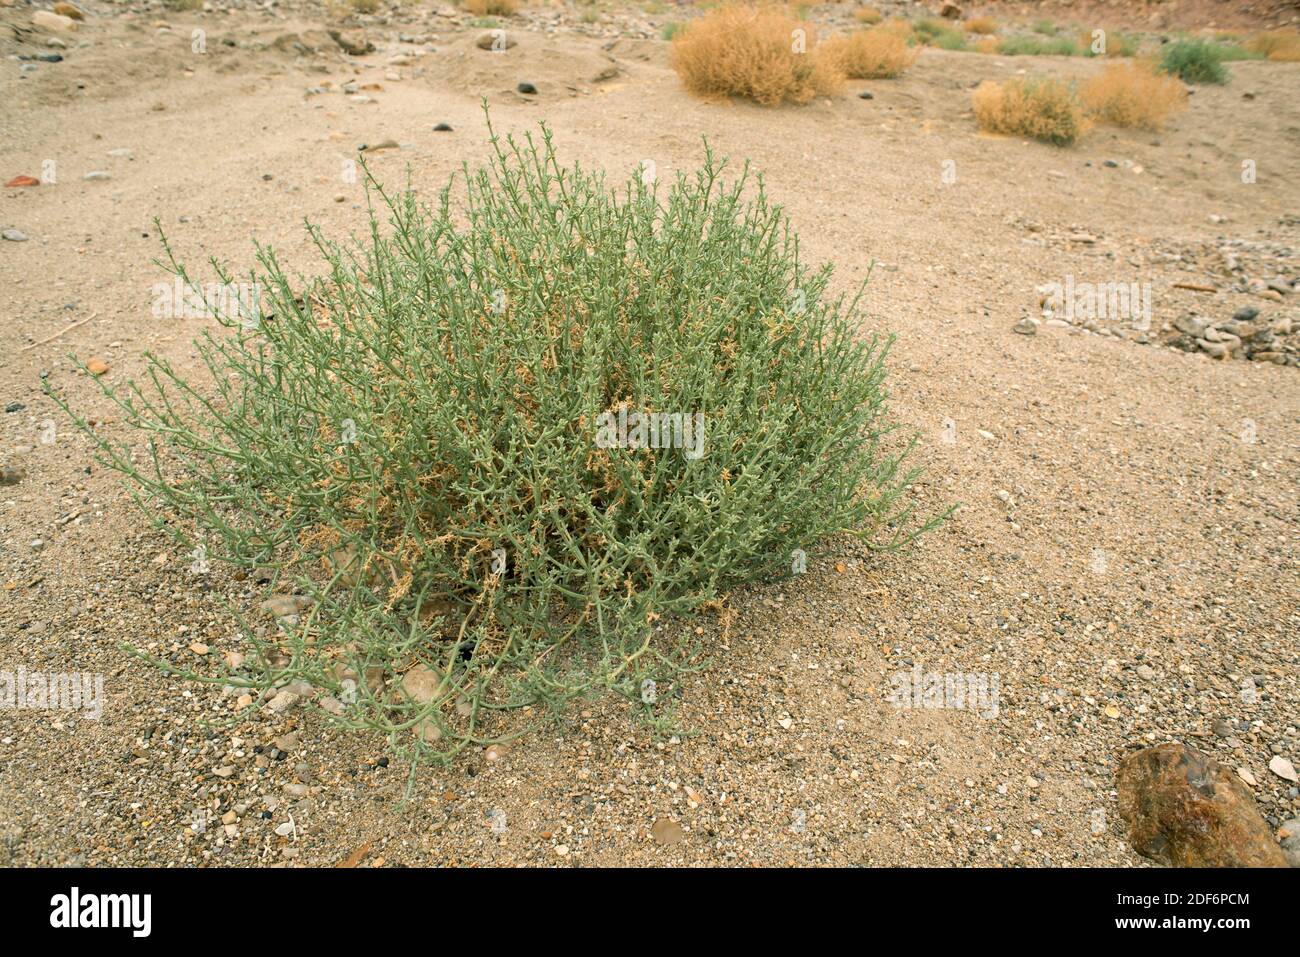 borstenanabasis (Anabasis setifera oder Salsola setifera) ist ein im westlichen Asien heimischer xerophytischer Unterstrauch. Dieses Foto wurde im Toten Meer, Jordanien, aufgenommen. Stockfoto